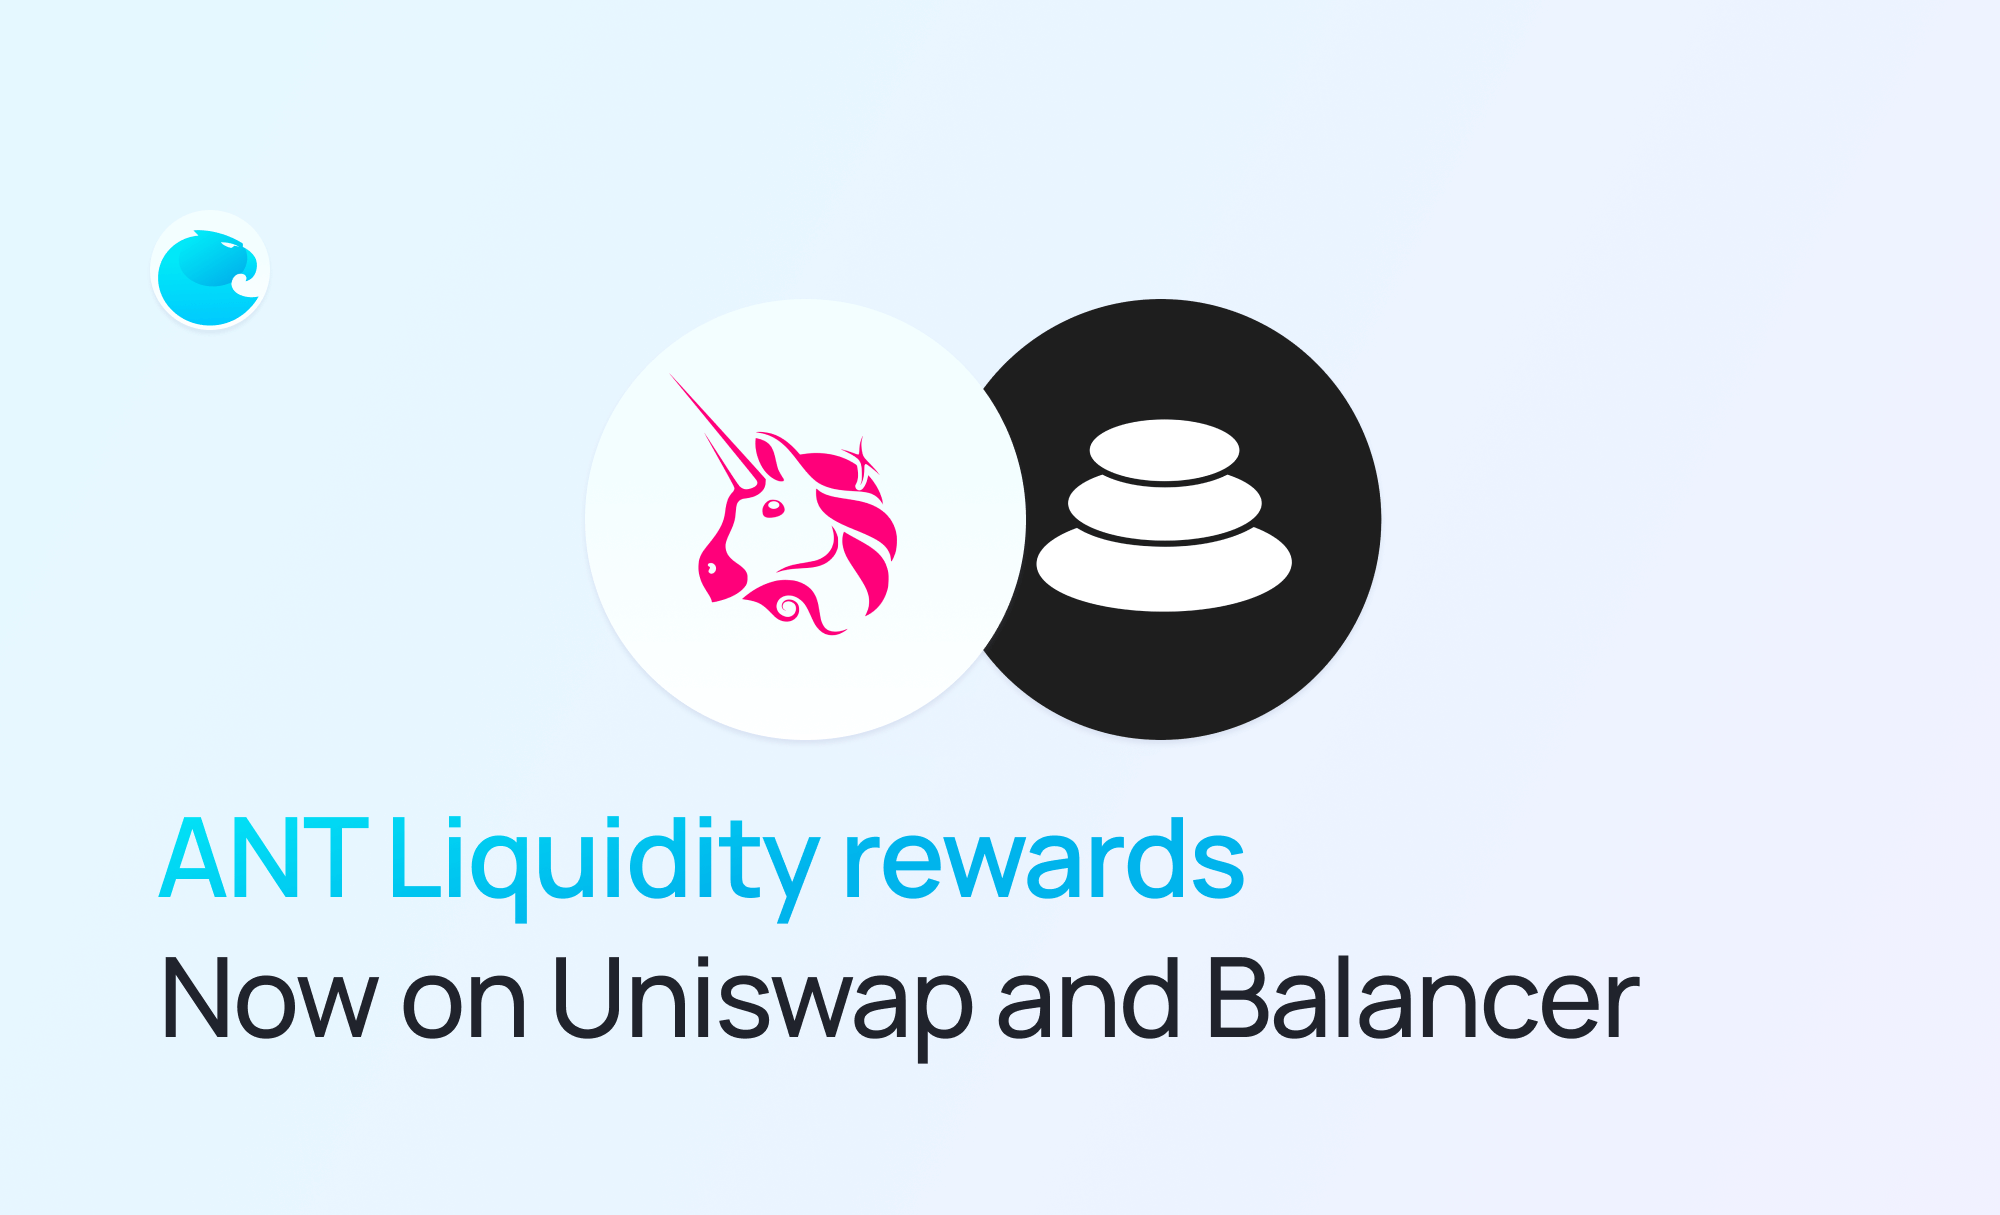 ANT liquidity rewards: Now on Uniswap and Balancer